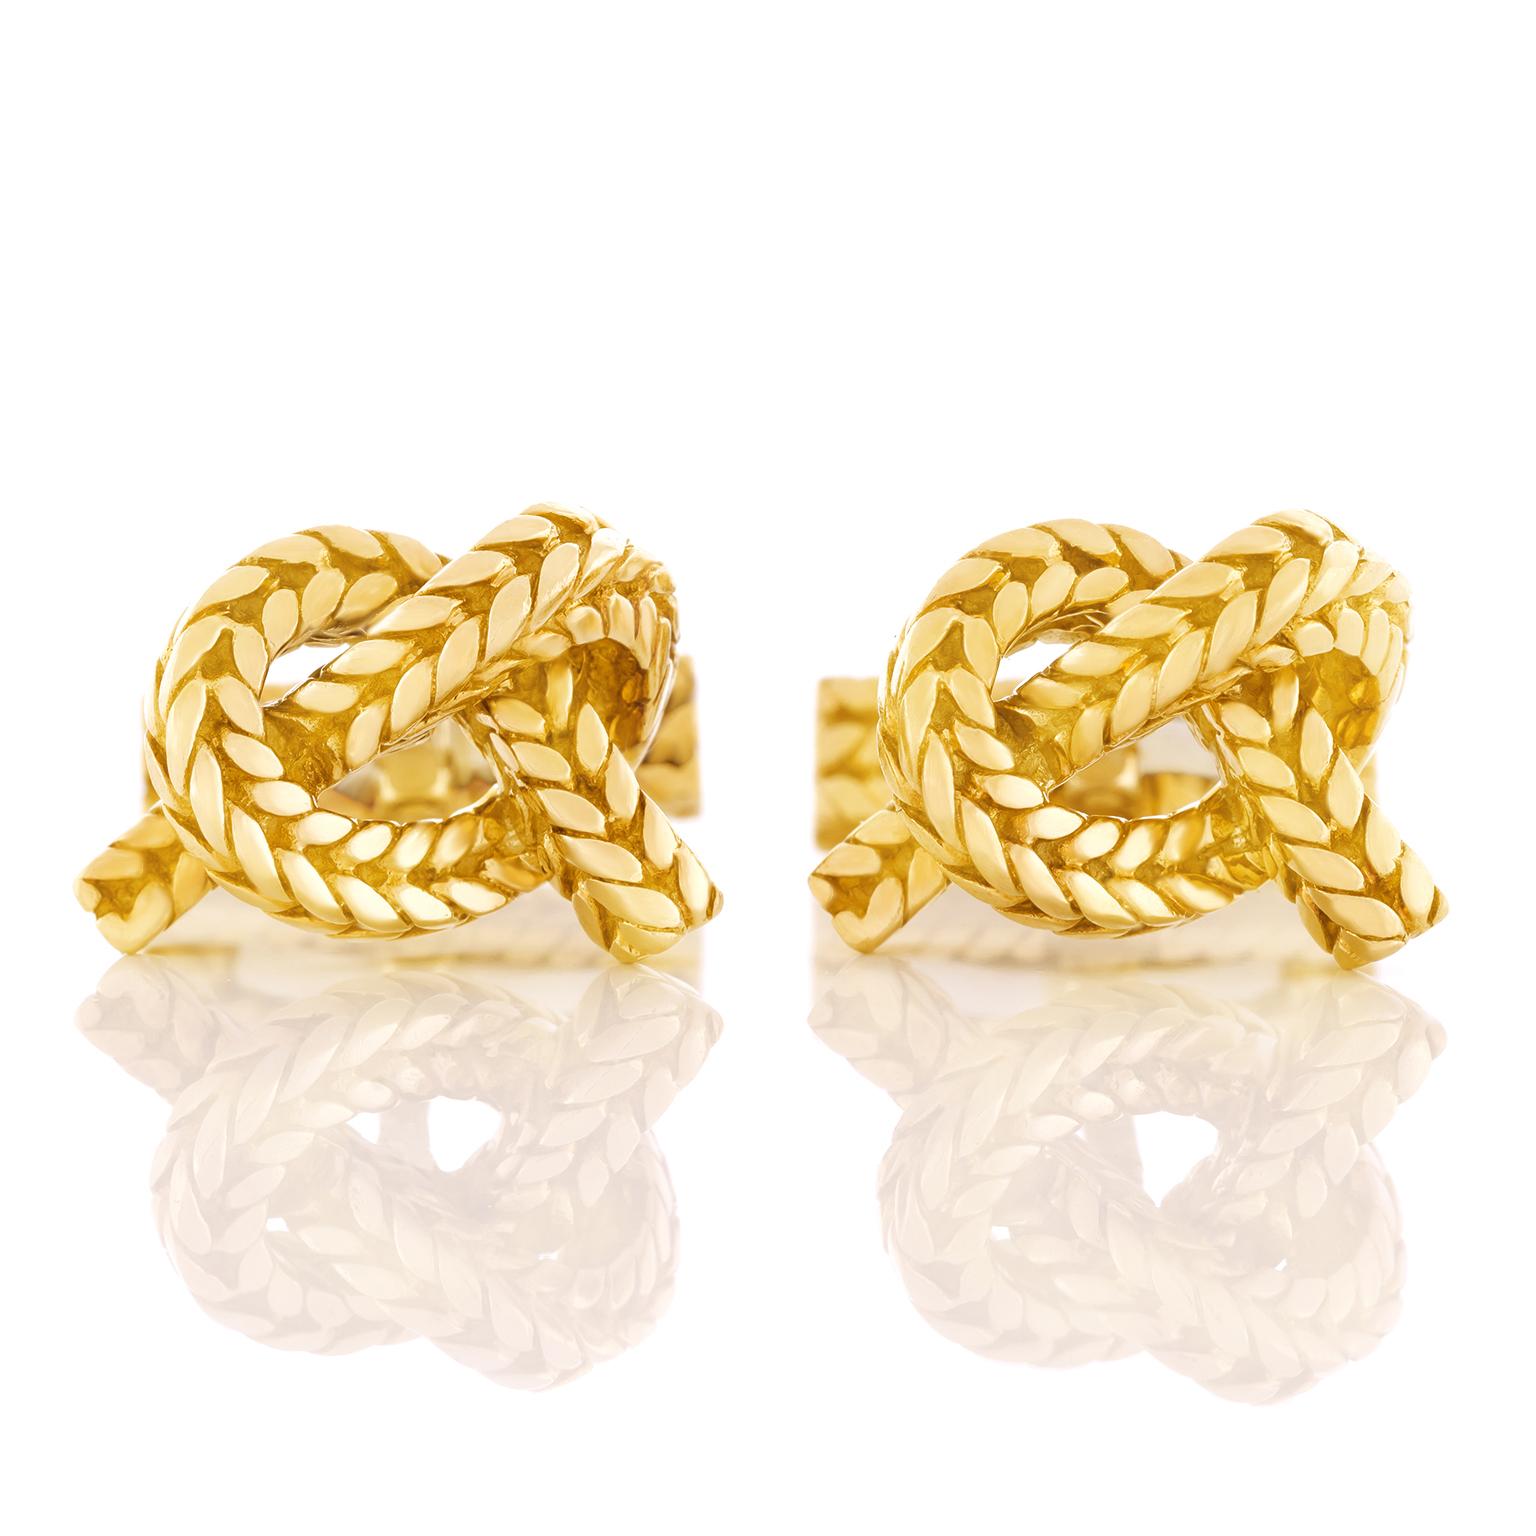 Hermes Knot Motif Gold Cufflinks 4